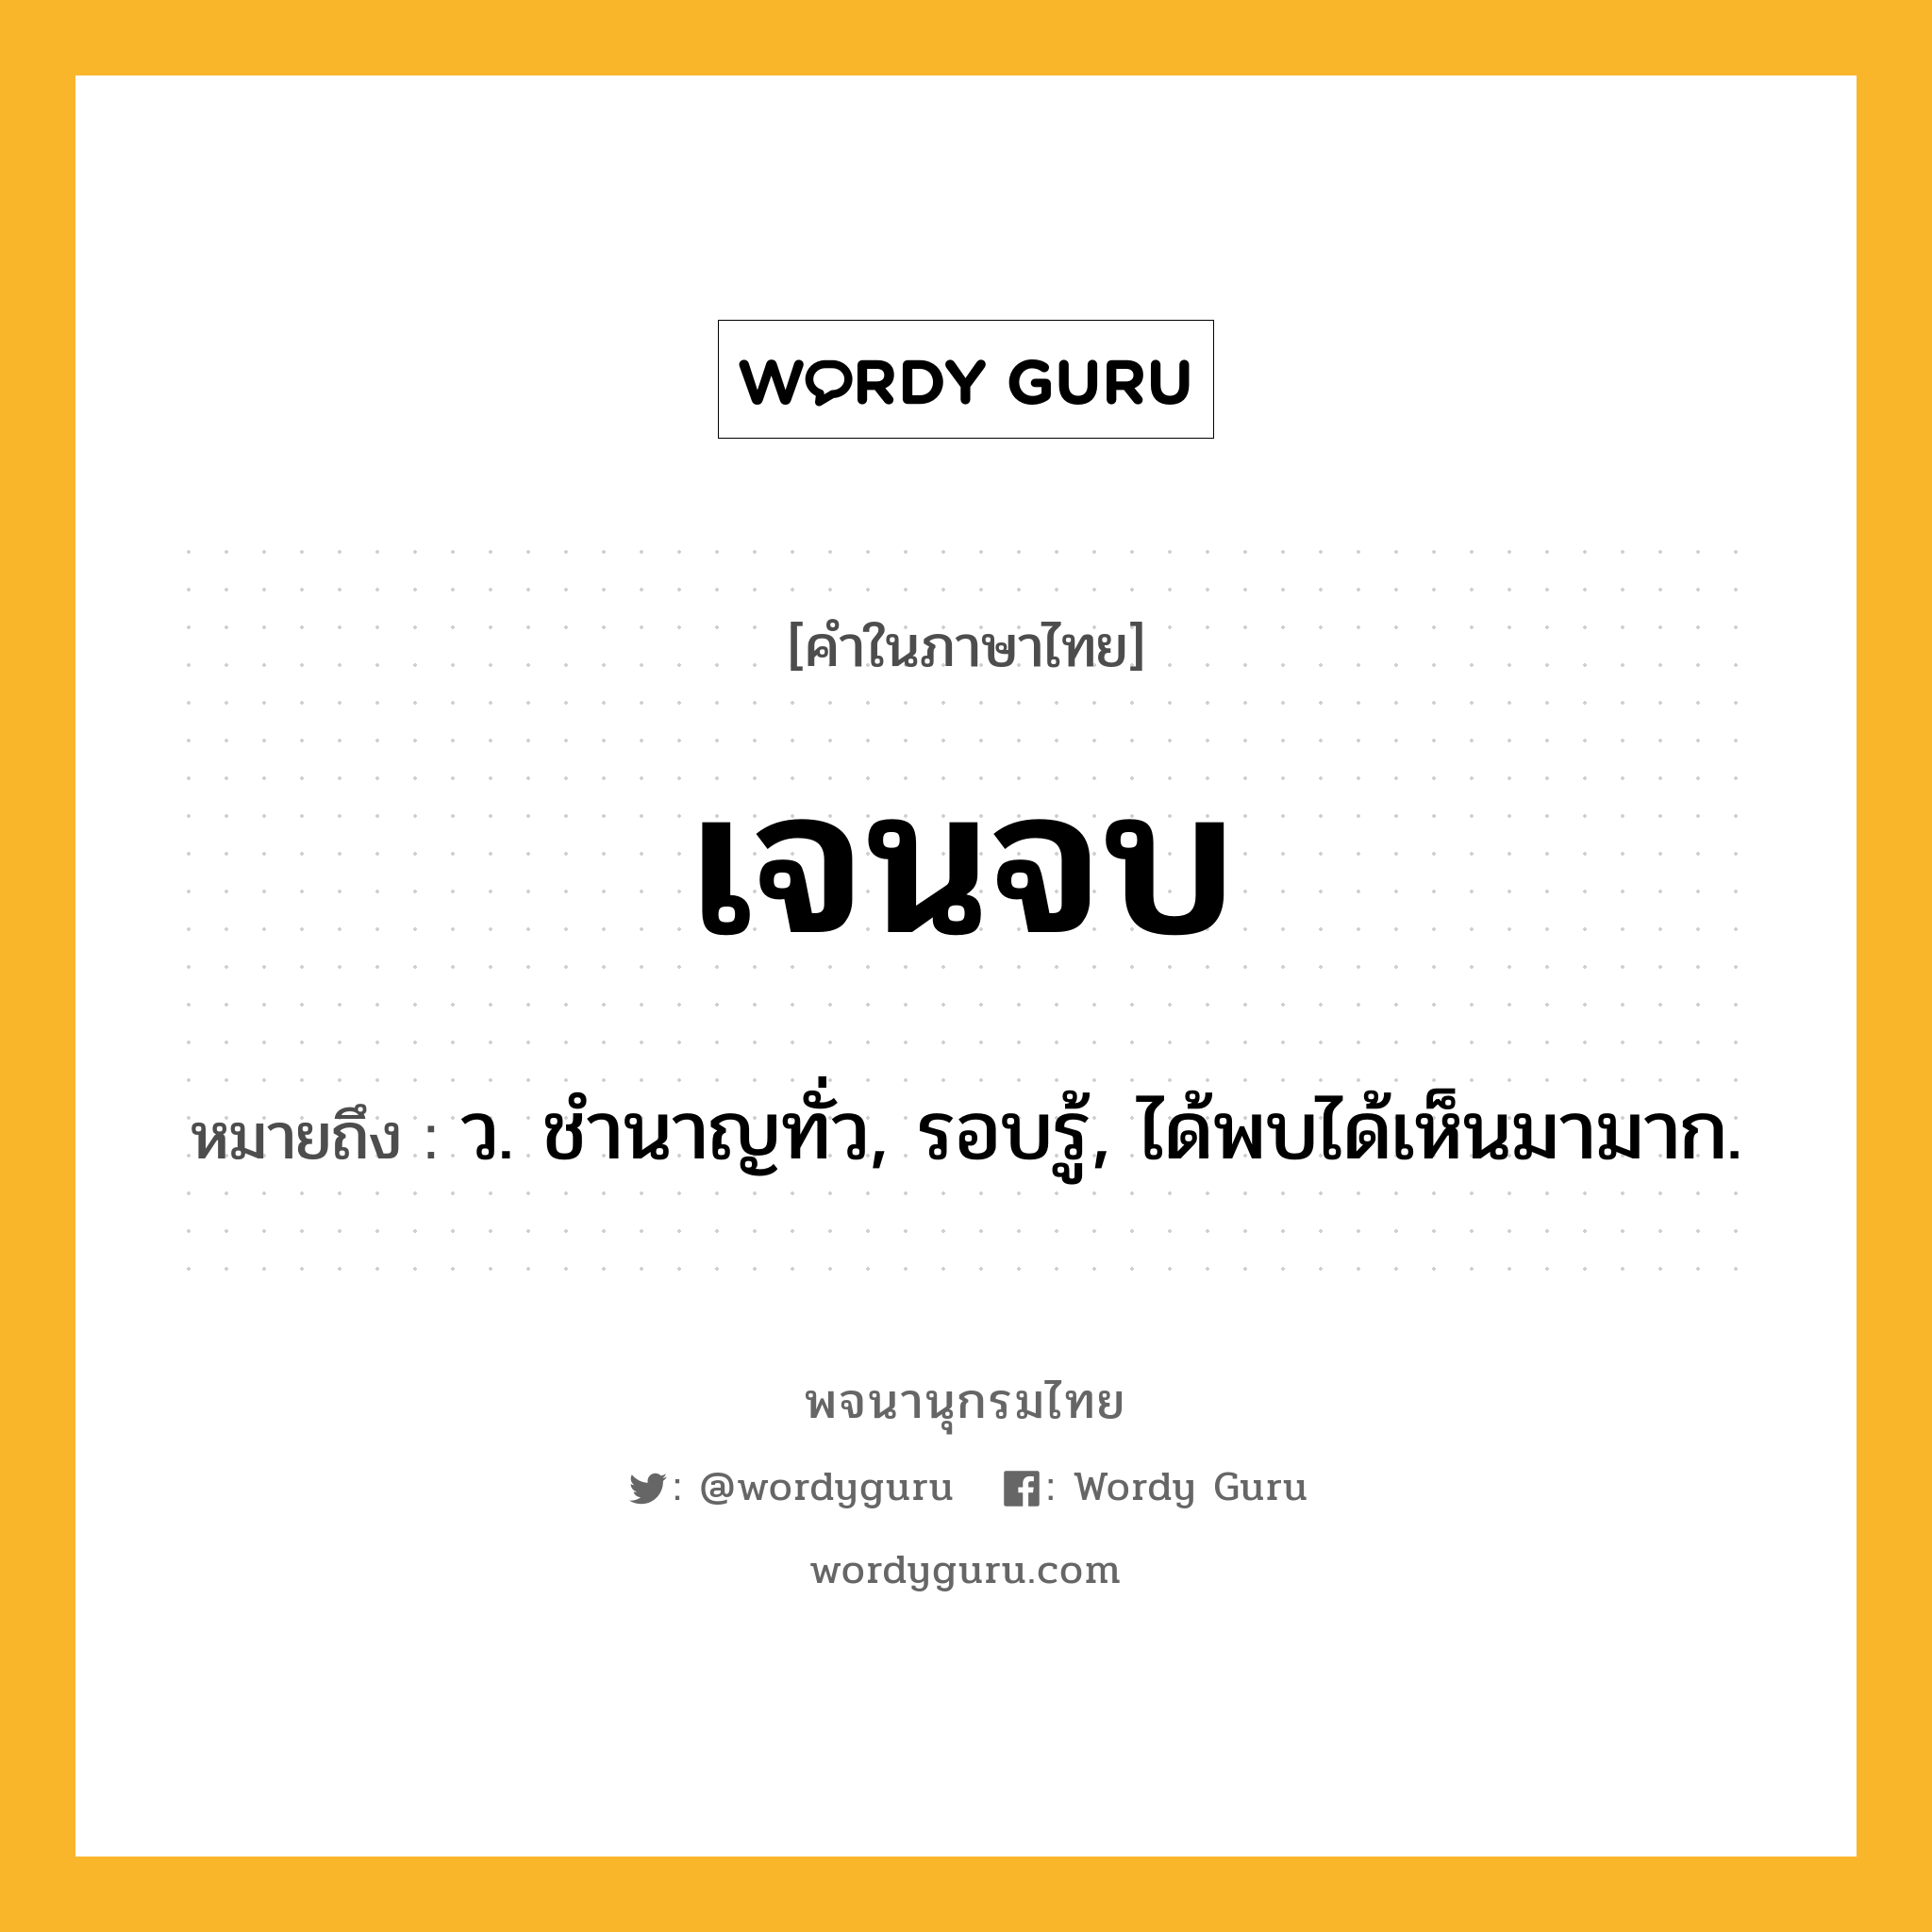 เจนจบ ความหมาย หมายถึงอะไร?, คำในภาษาไทย เจนจบ หมายถึง ว. ชํานาญทั่ว, รอบรู้, ได้พบได้เห็นมามาก.